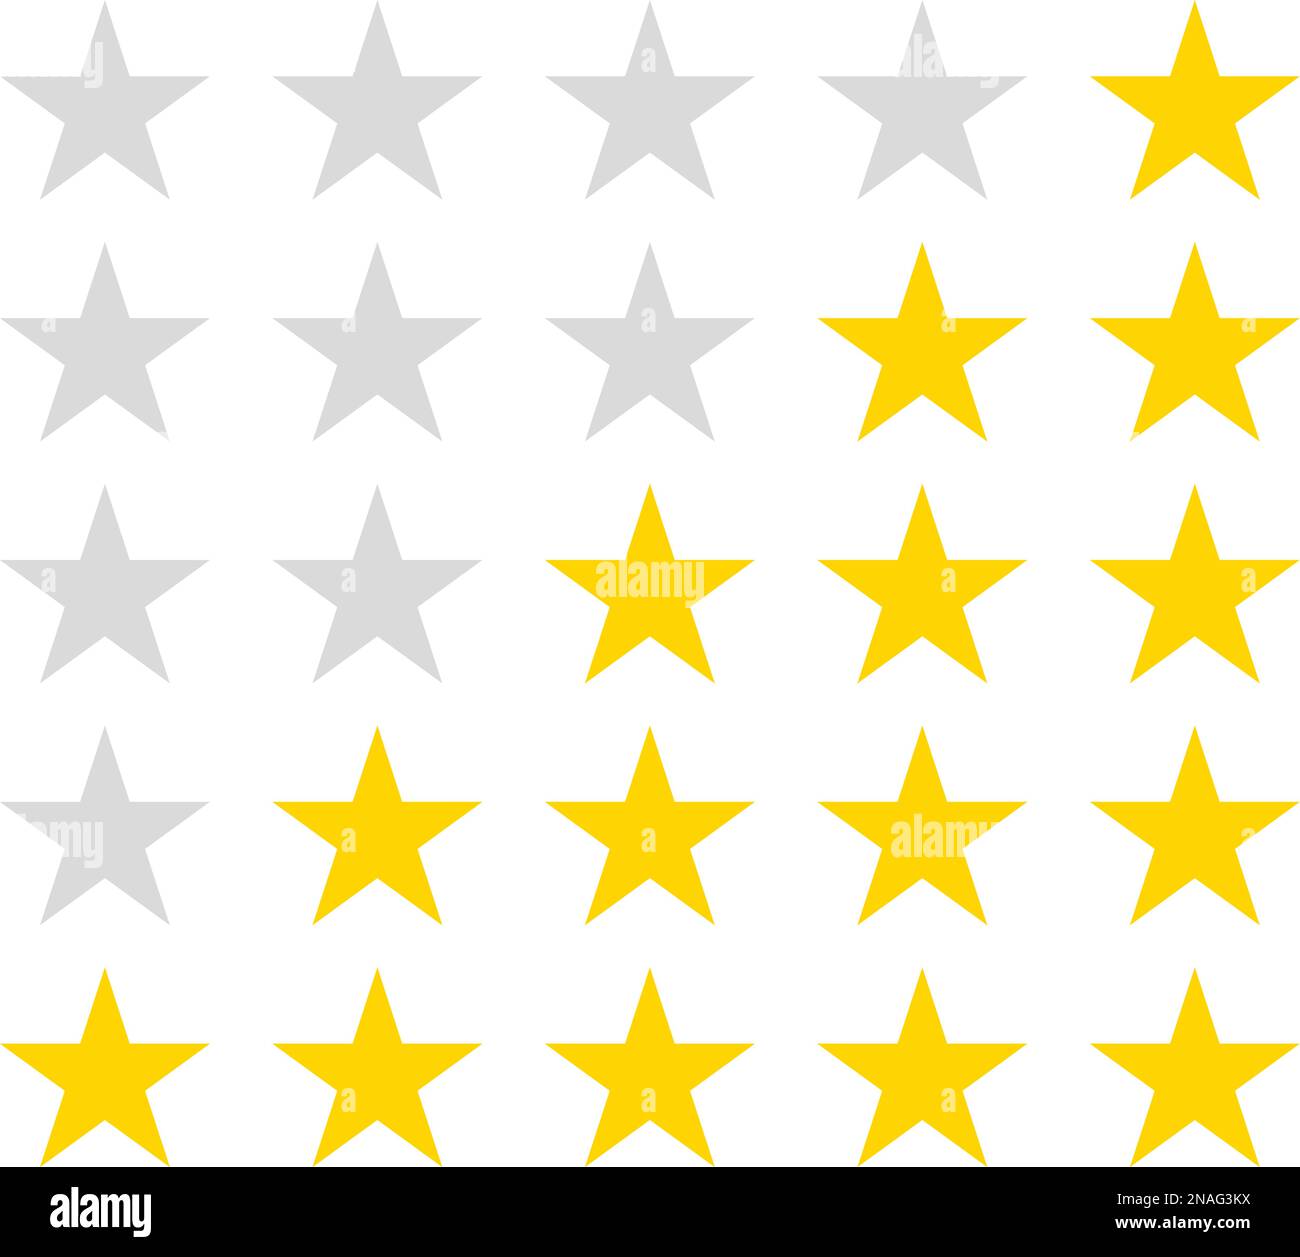 Arrondi simple classement par étoiles. Avec les étoiles est décrit sur fond de pop Illustration de Vecteur